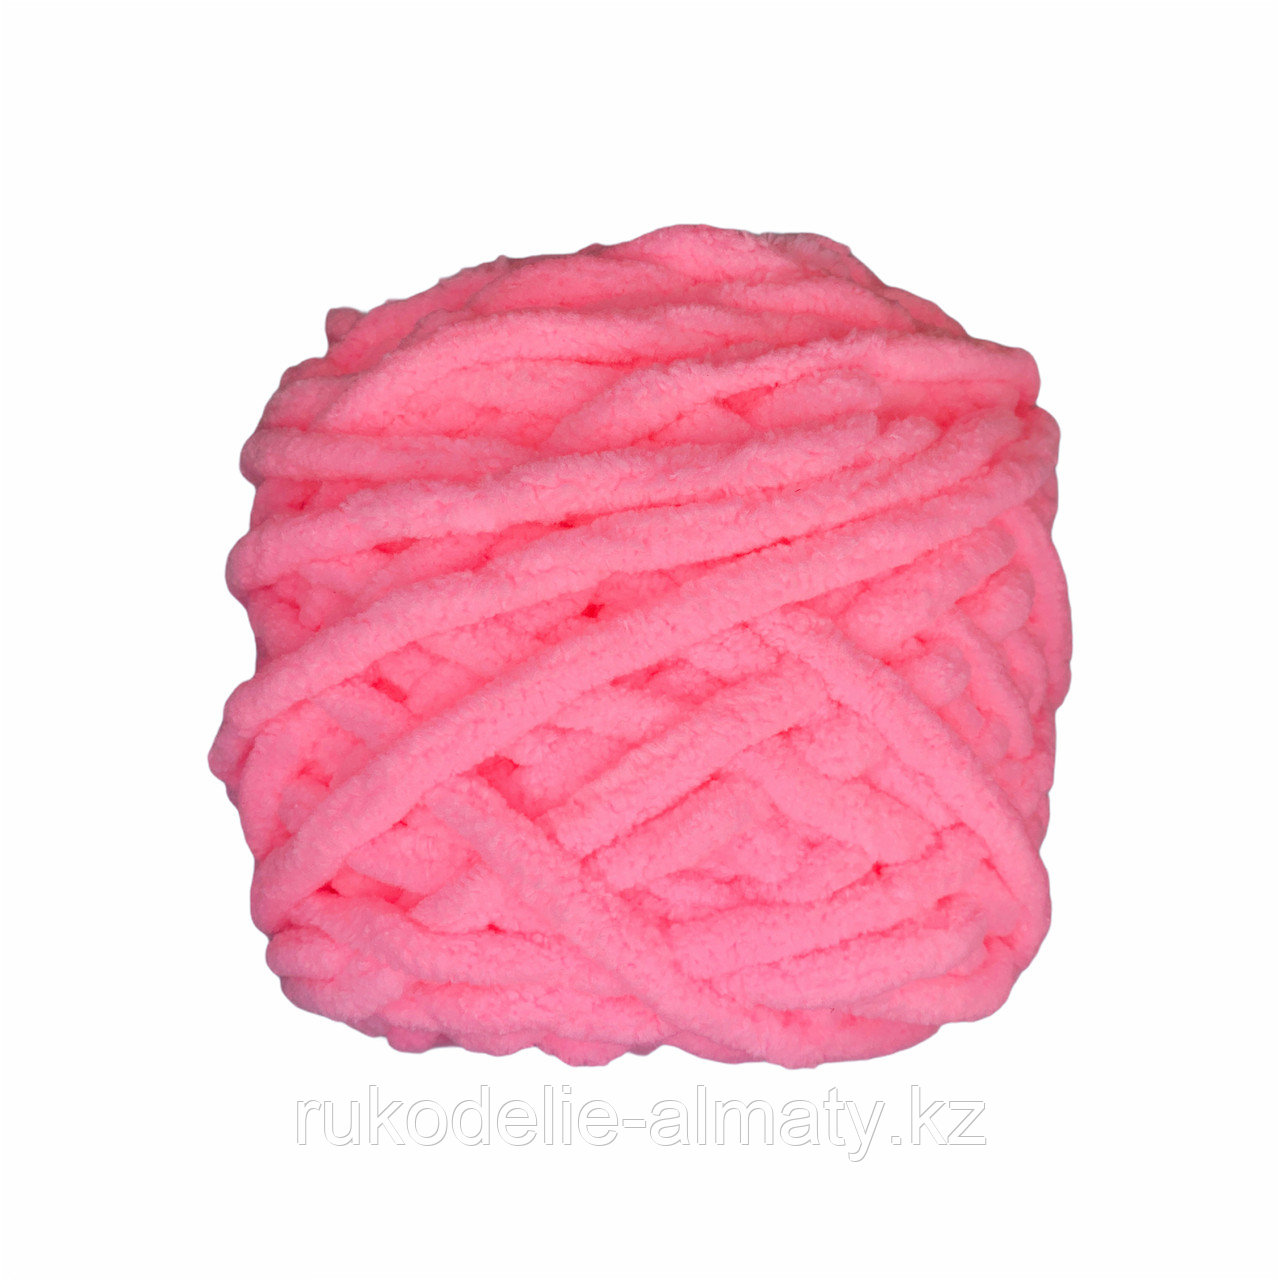 Велюровая пряжа для ручного вязания, толщиной 0,8 мм нежно-розовый